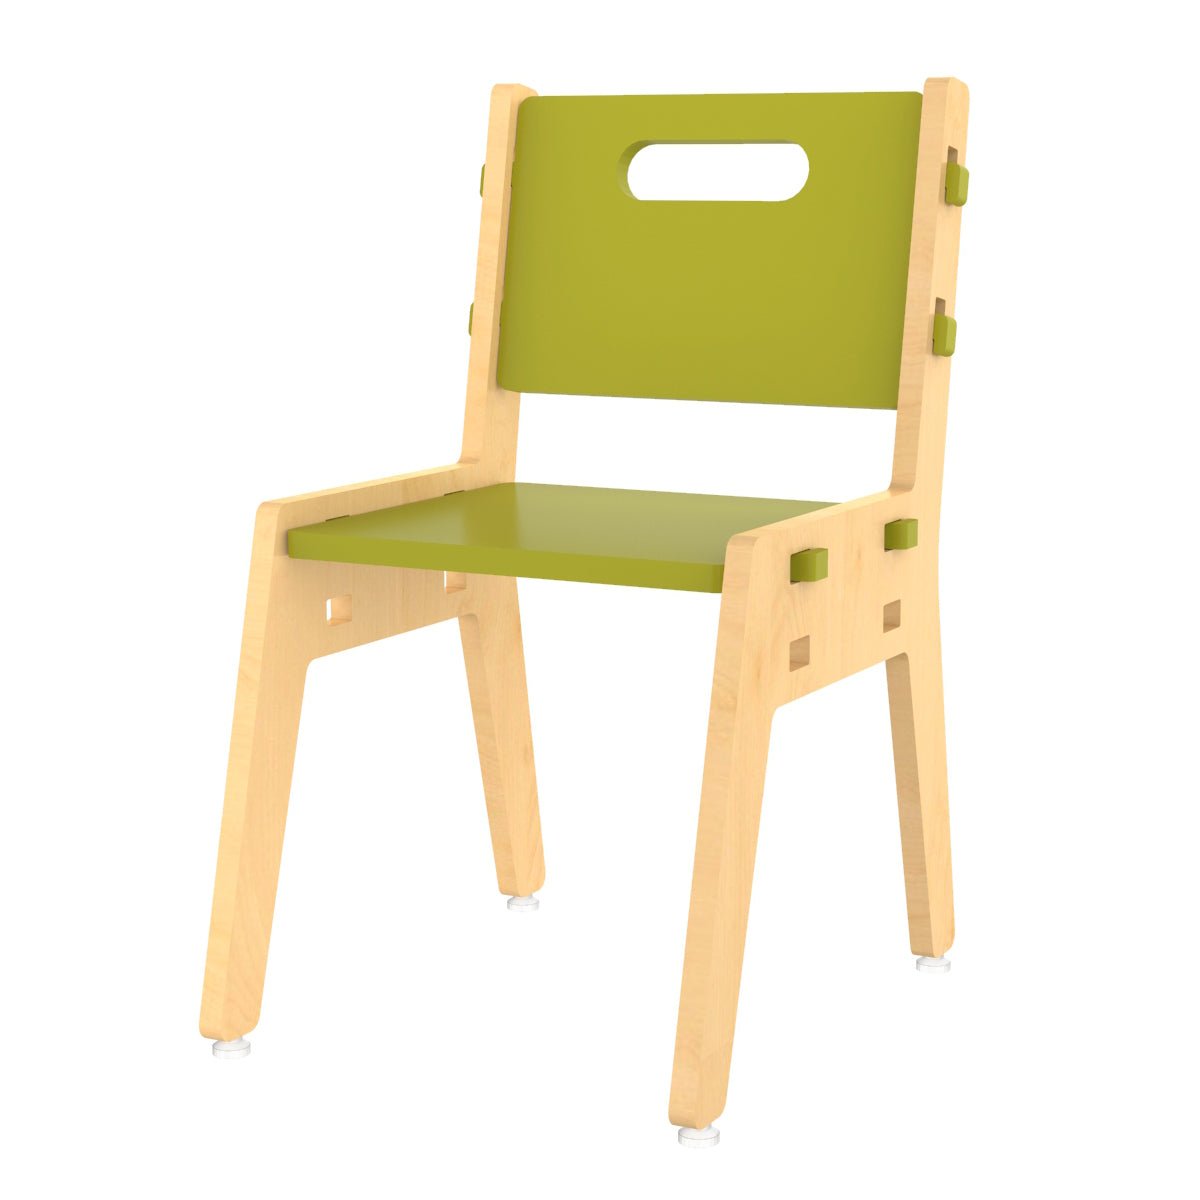 X&Y Silver Peach Chair - Green - FG110918G